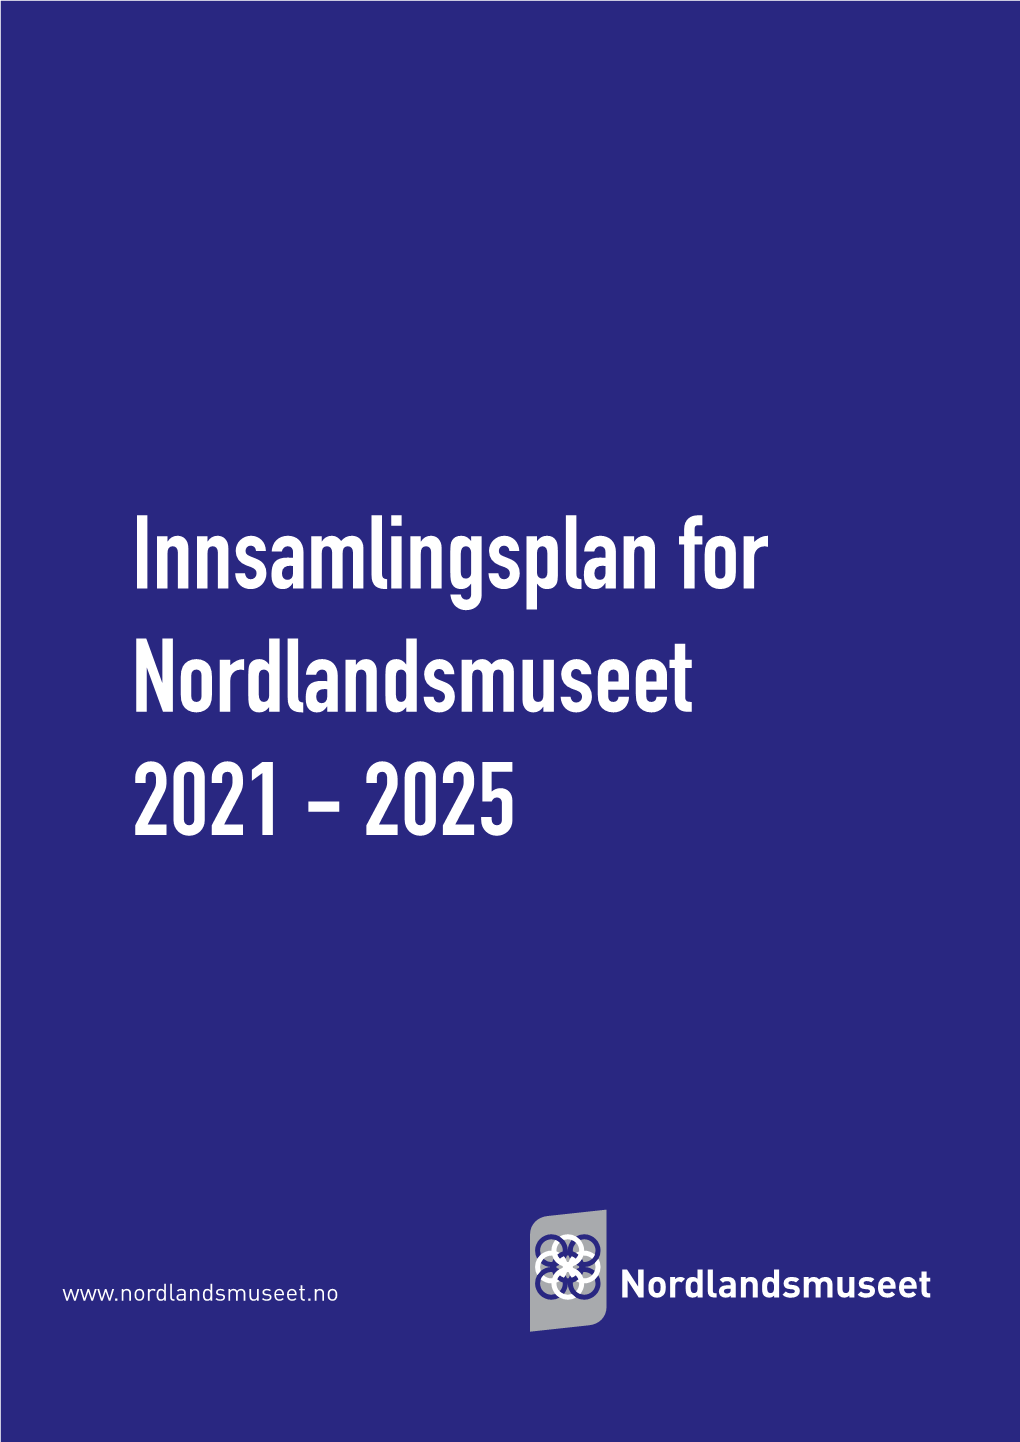 Innsamlingsplan for Nordlandsmuseet 2021 - 2025